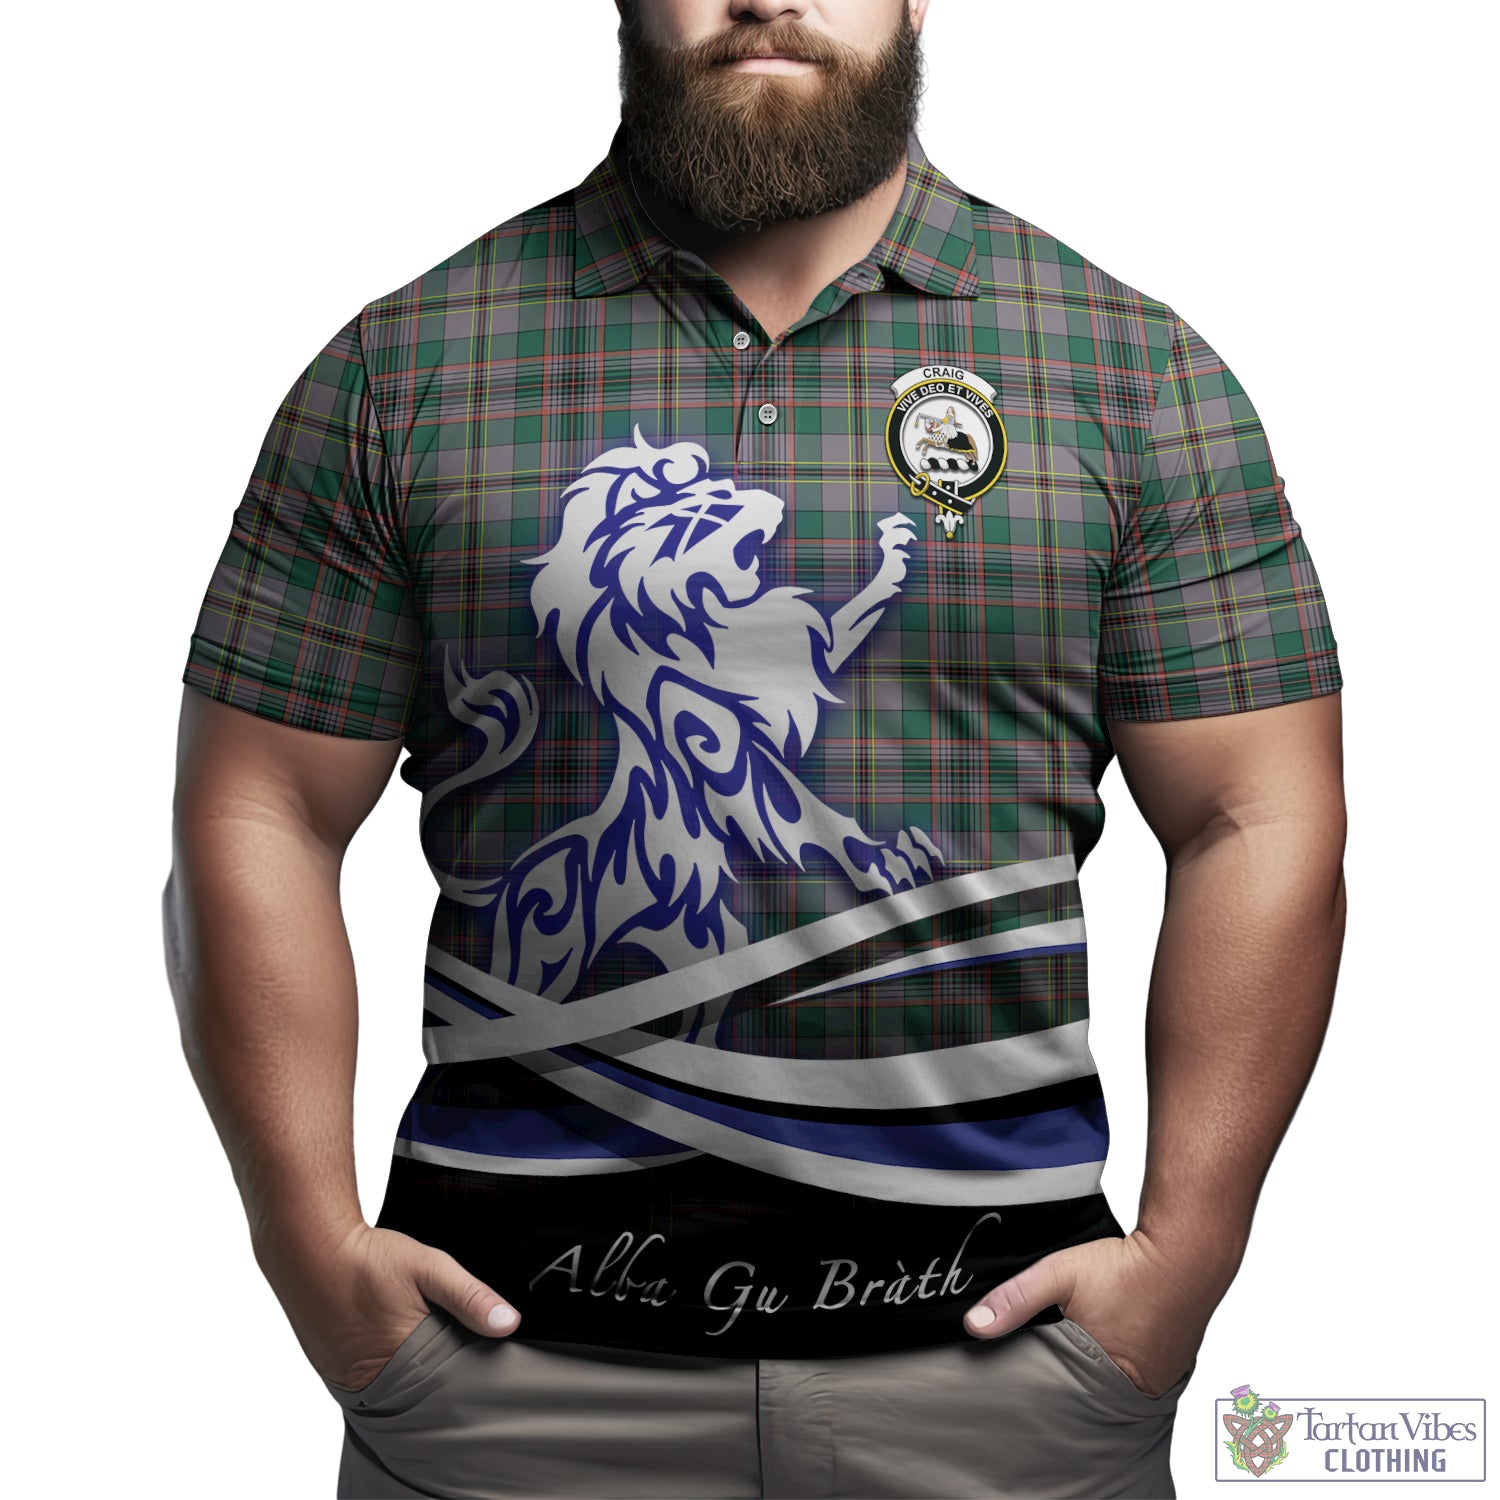 craig-ancient-tartan-polo-shirt-with-alba-gu-brath-regal-lion-emblem